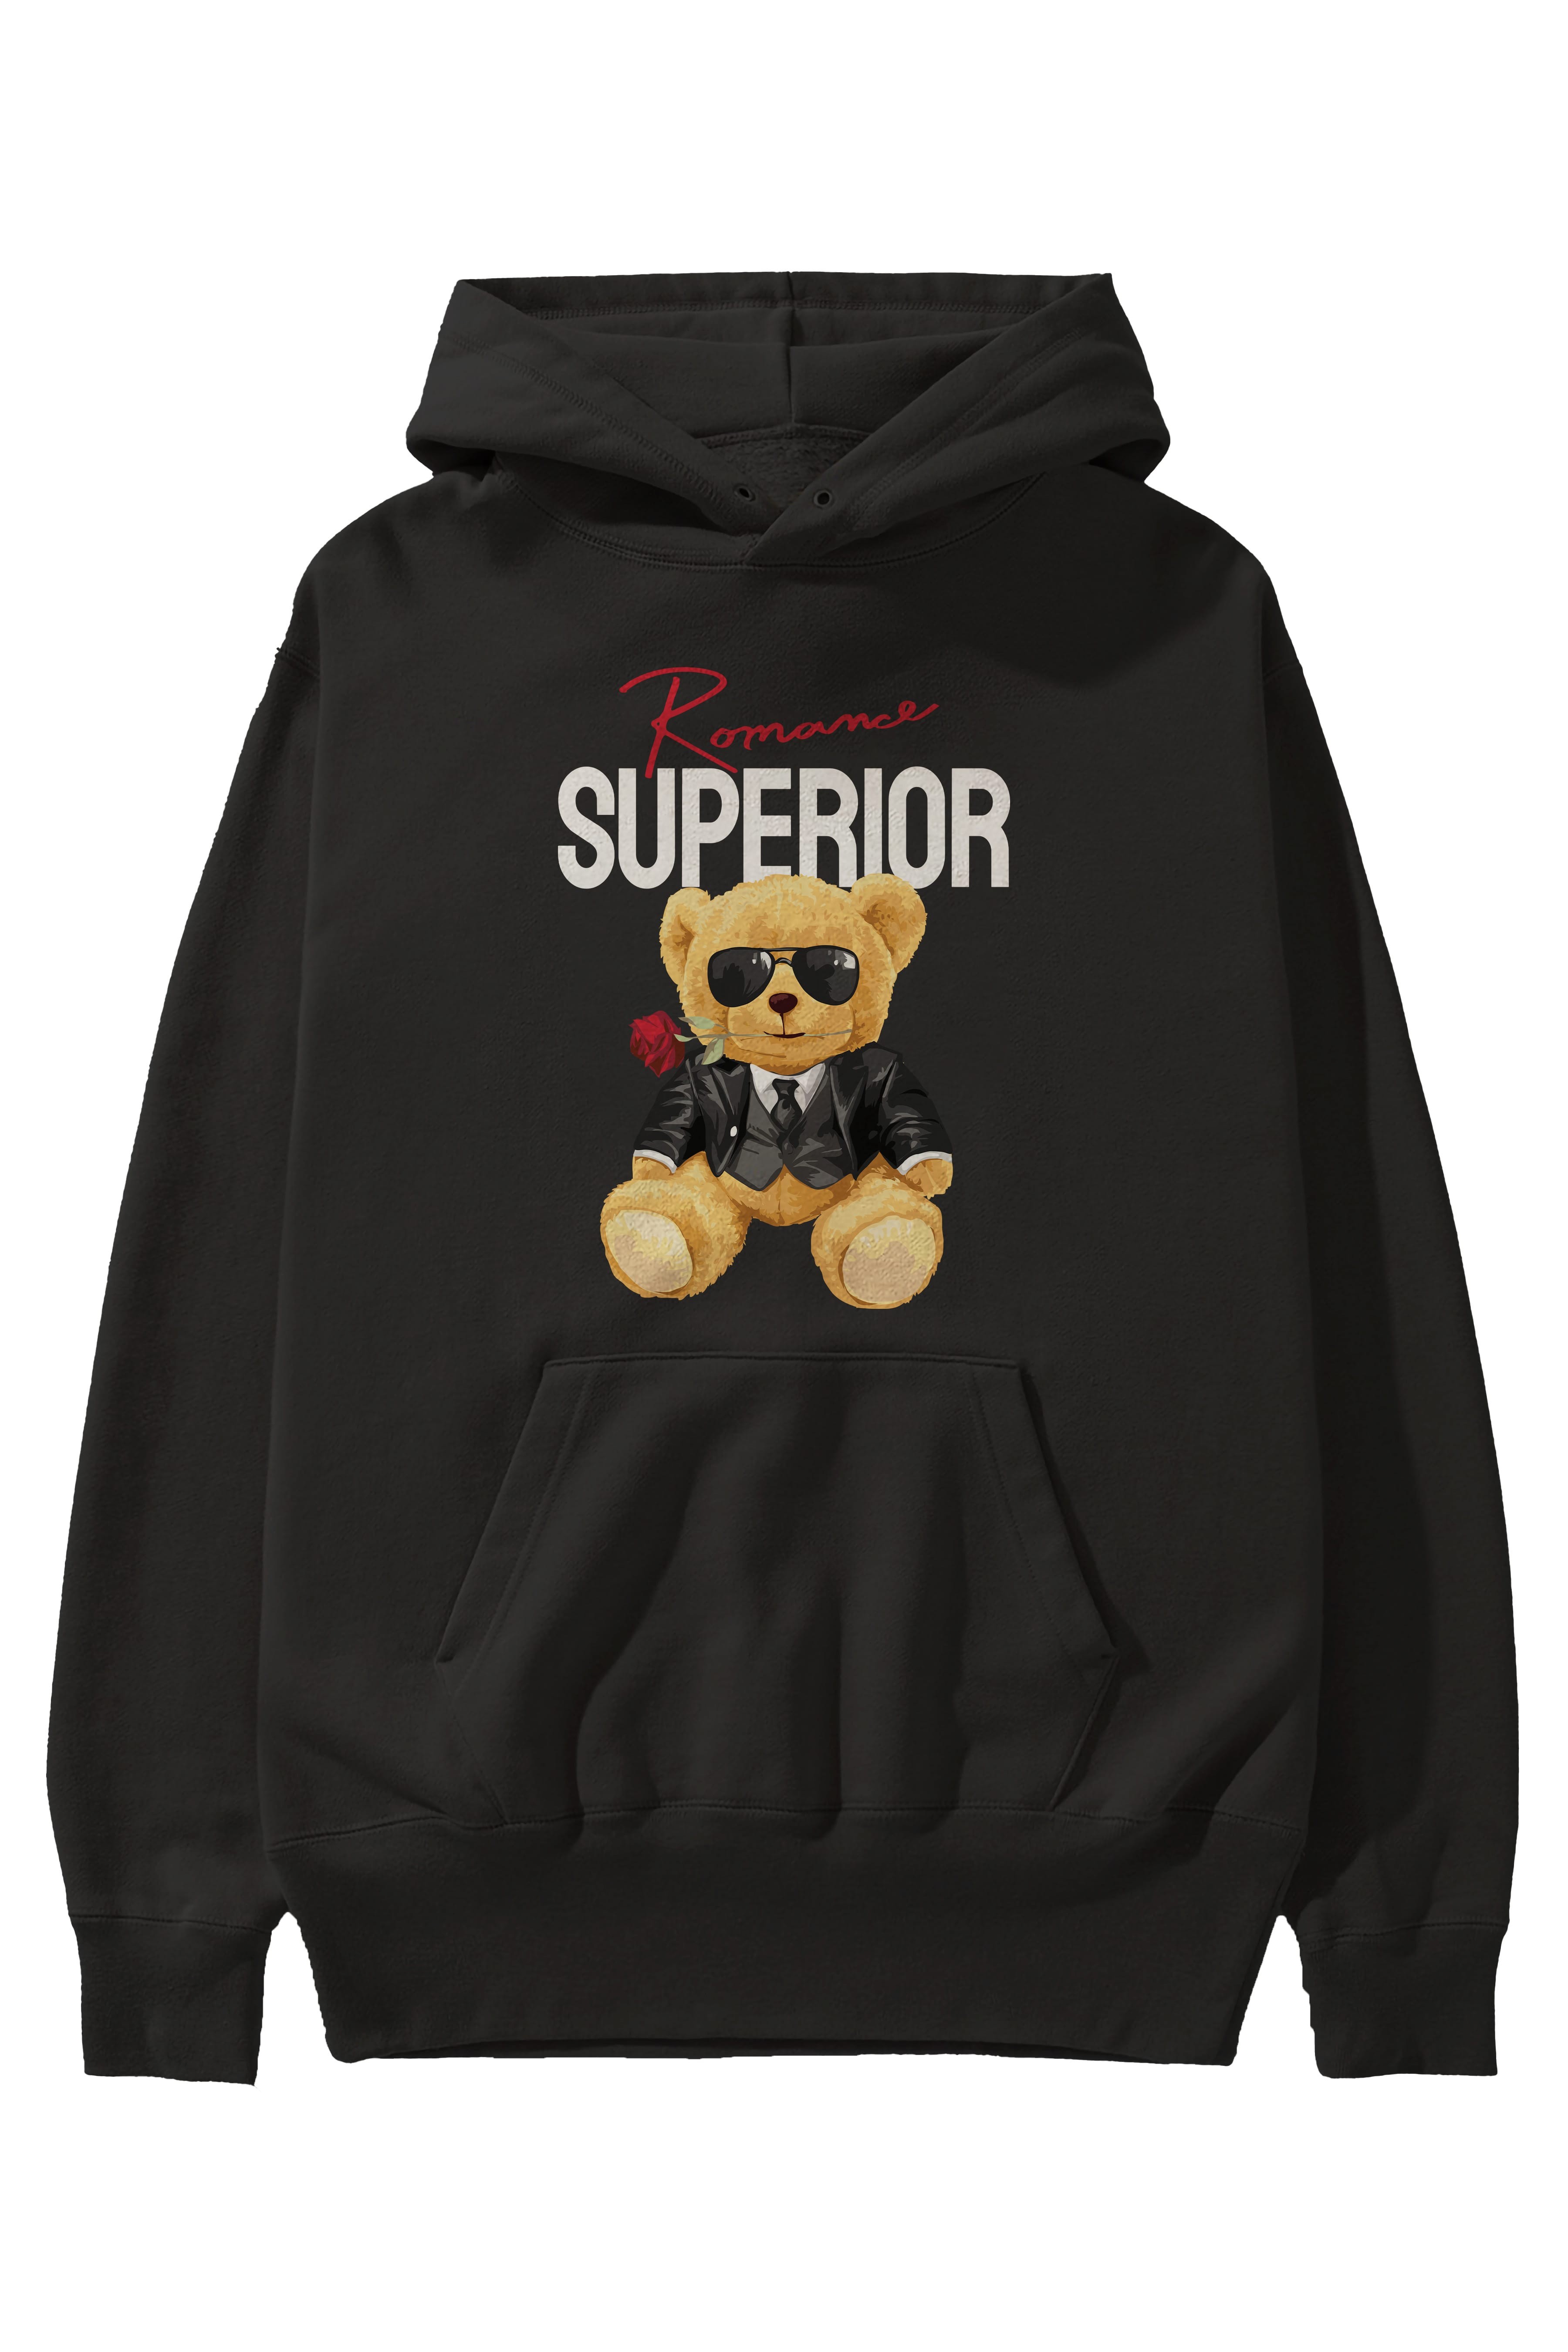 Teddy Bear Romance Superior Ön Baskılı Hoodie Oversize Kapüşonlu Sweatshirt Erkek Kadın Unisex